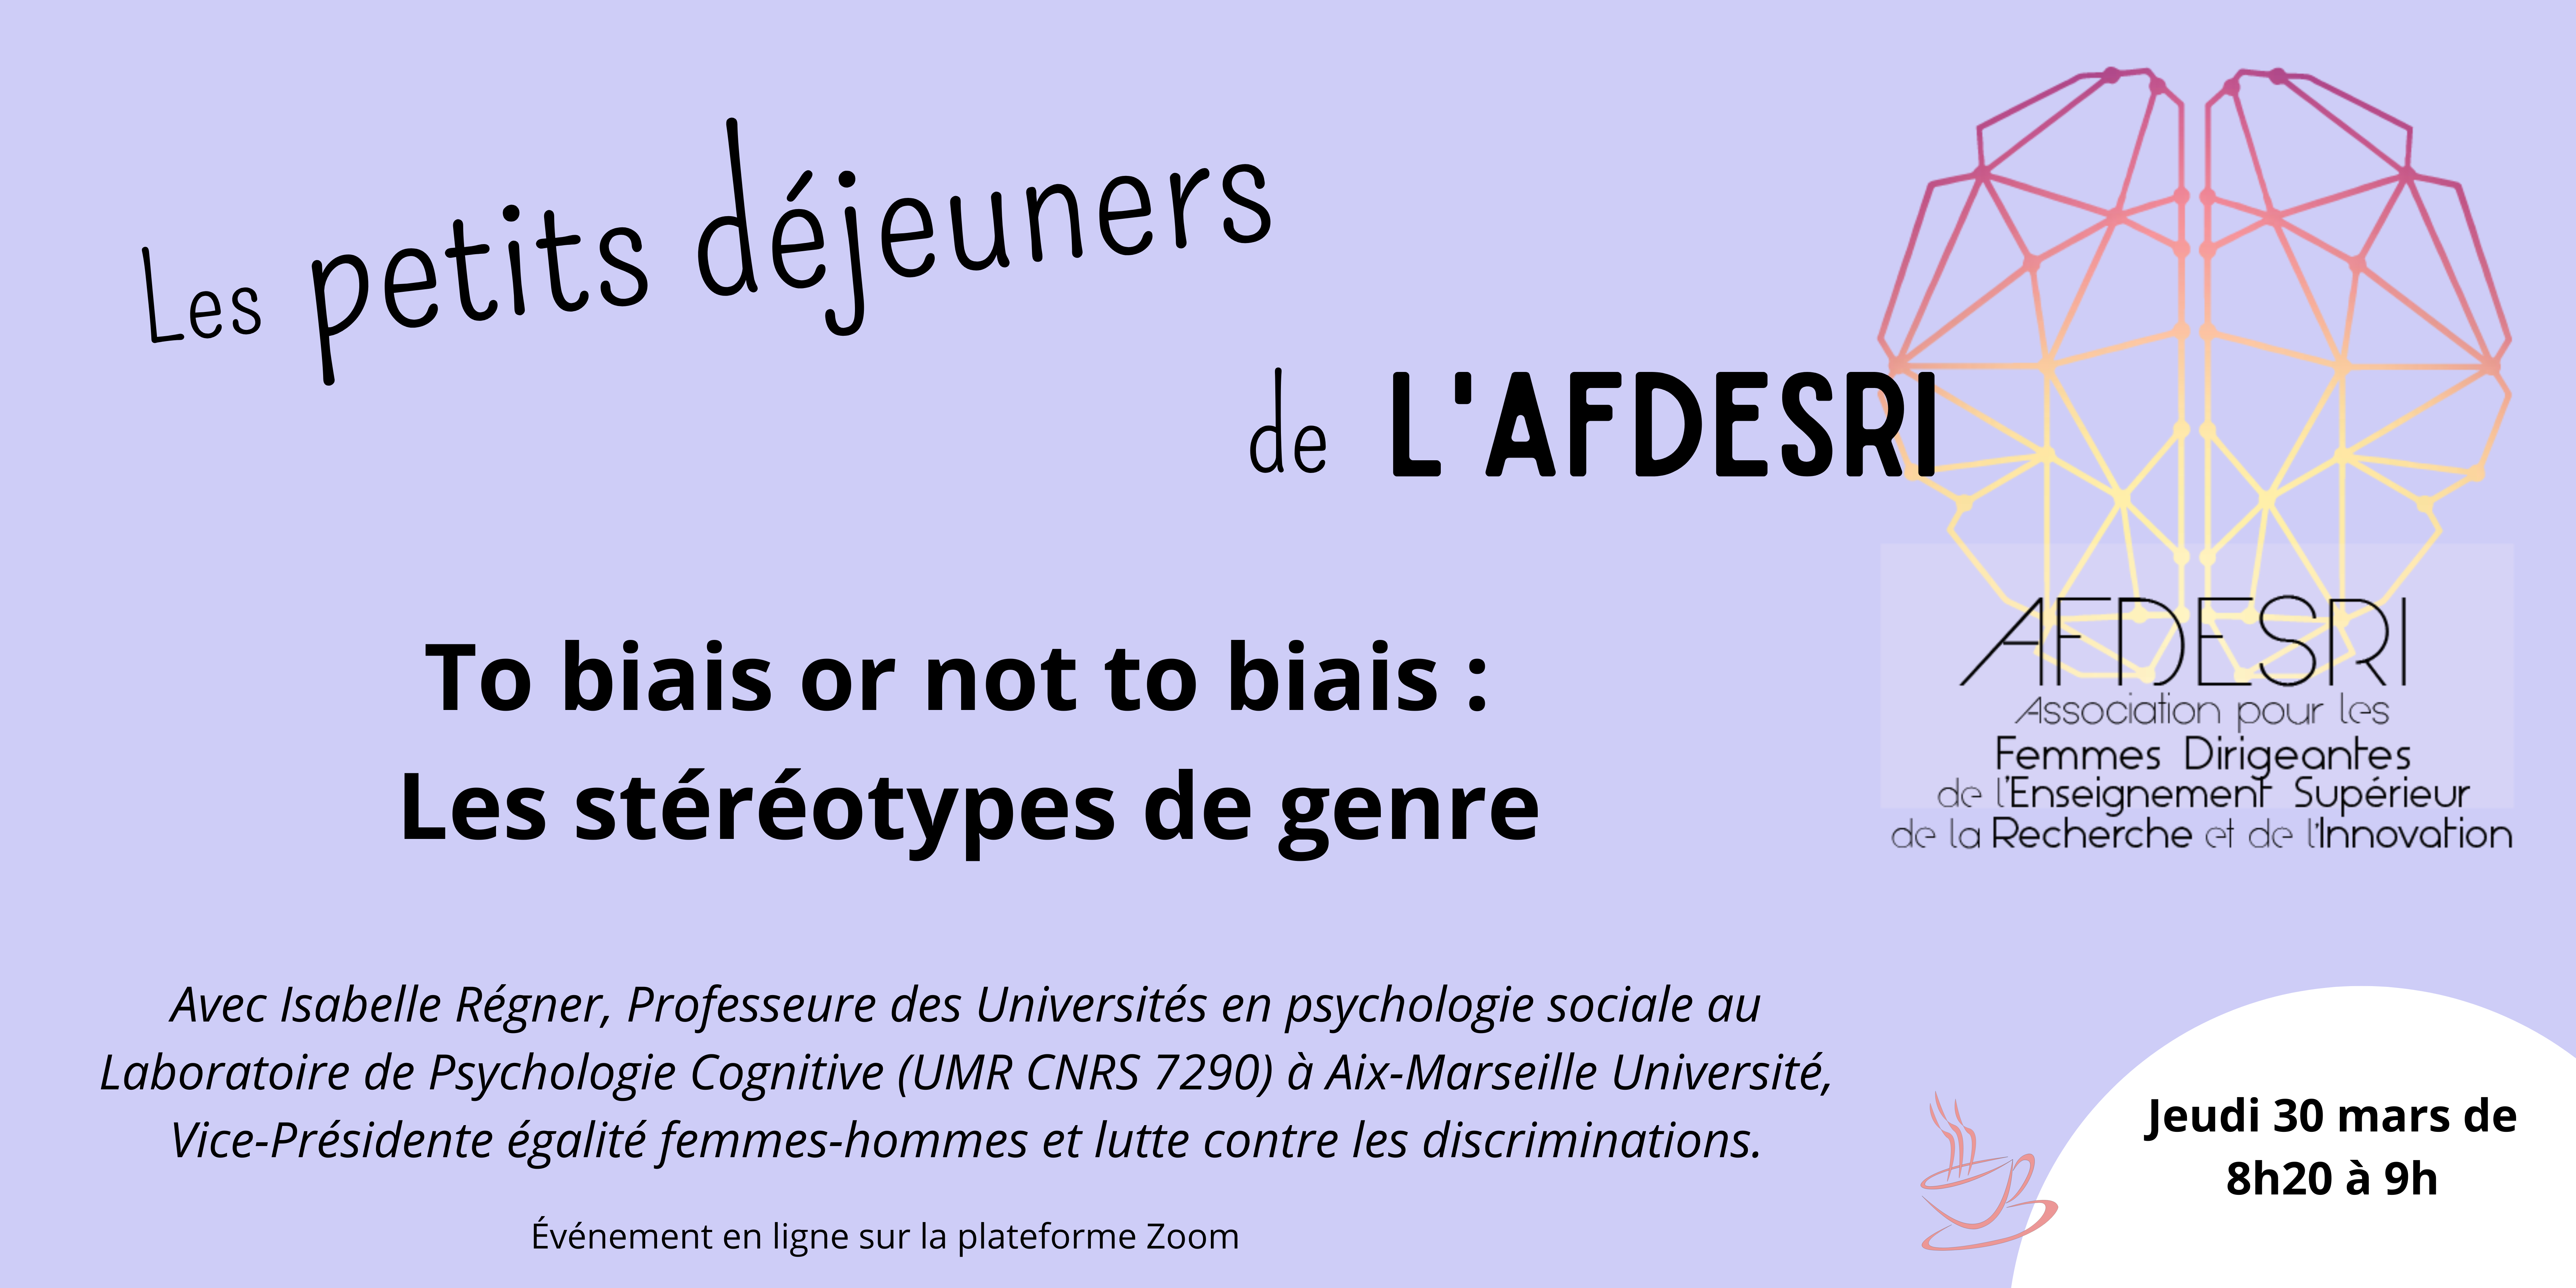 9e Petit Déjeuner de l’AFDESRI – jeudi 30 mars 2023. “To biais or not to biais : Les stéréotypes de genre.”